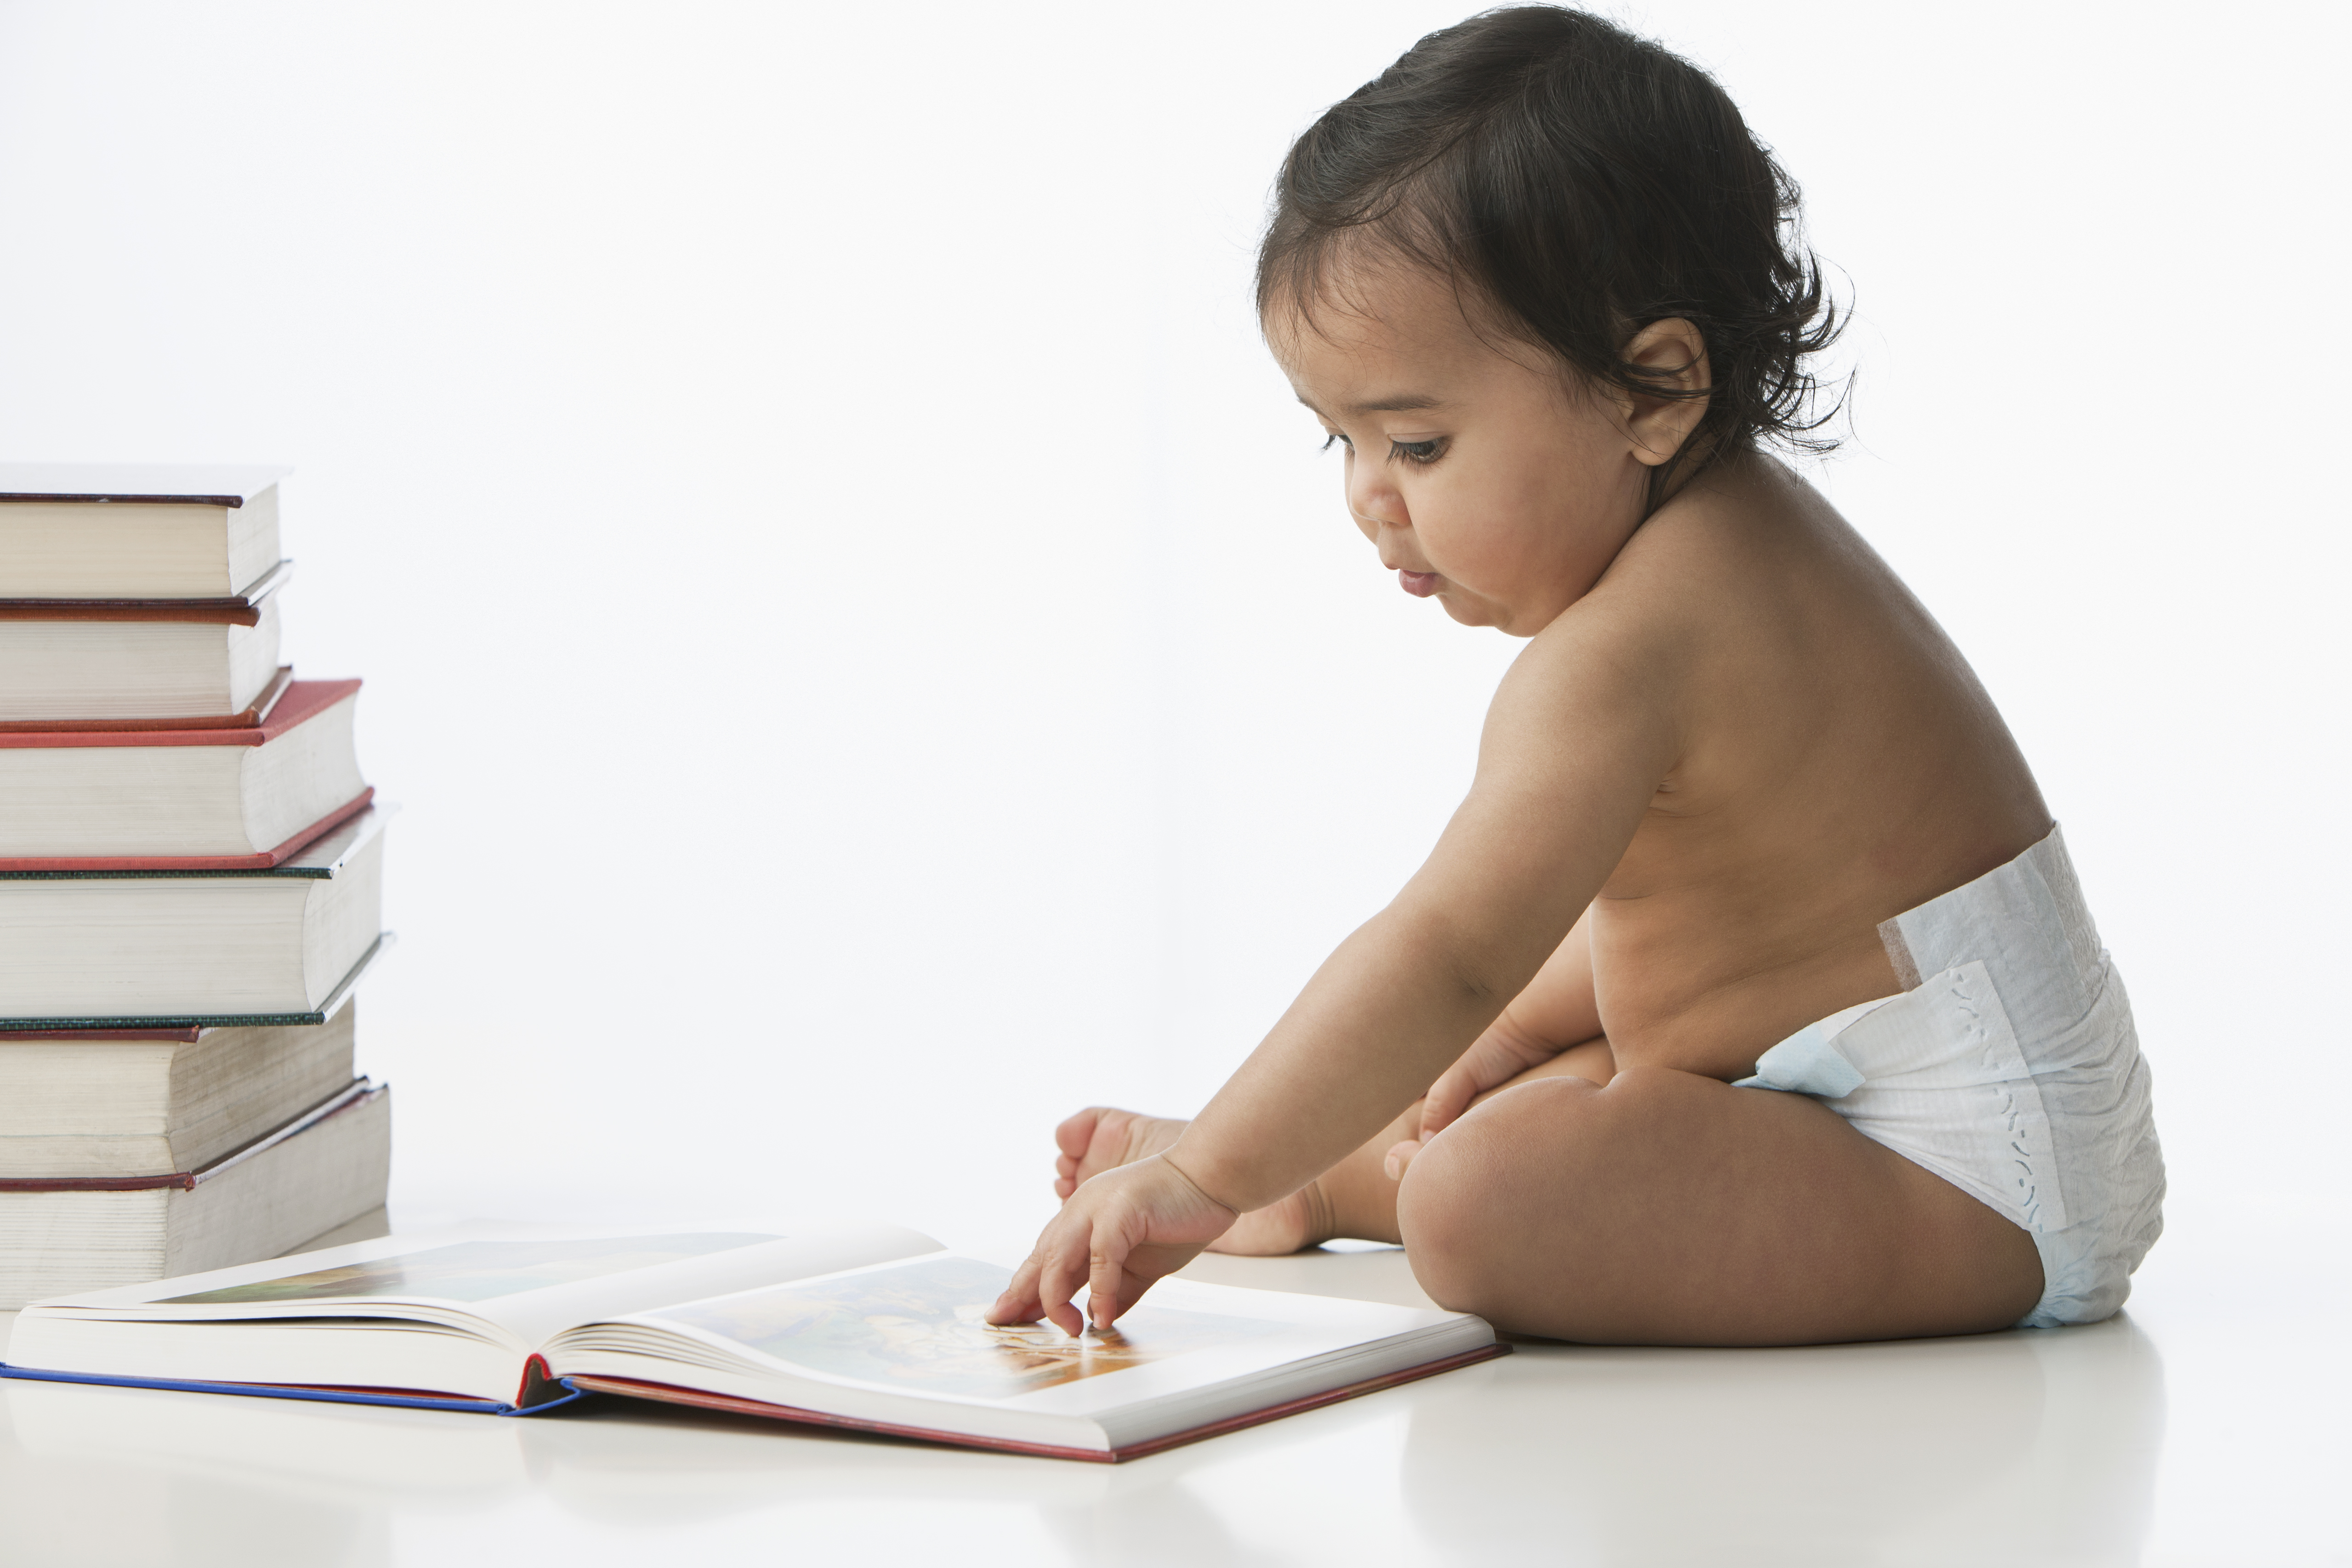 Un bebé sentado cerca de una pila de libros juega con las páginas de un libro abierto.